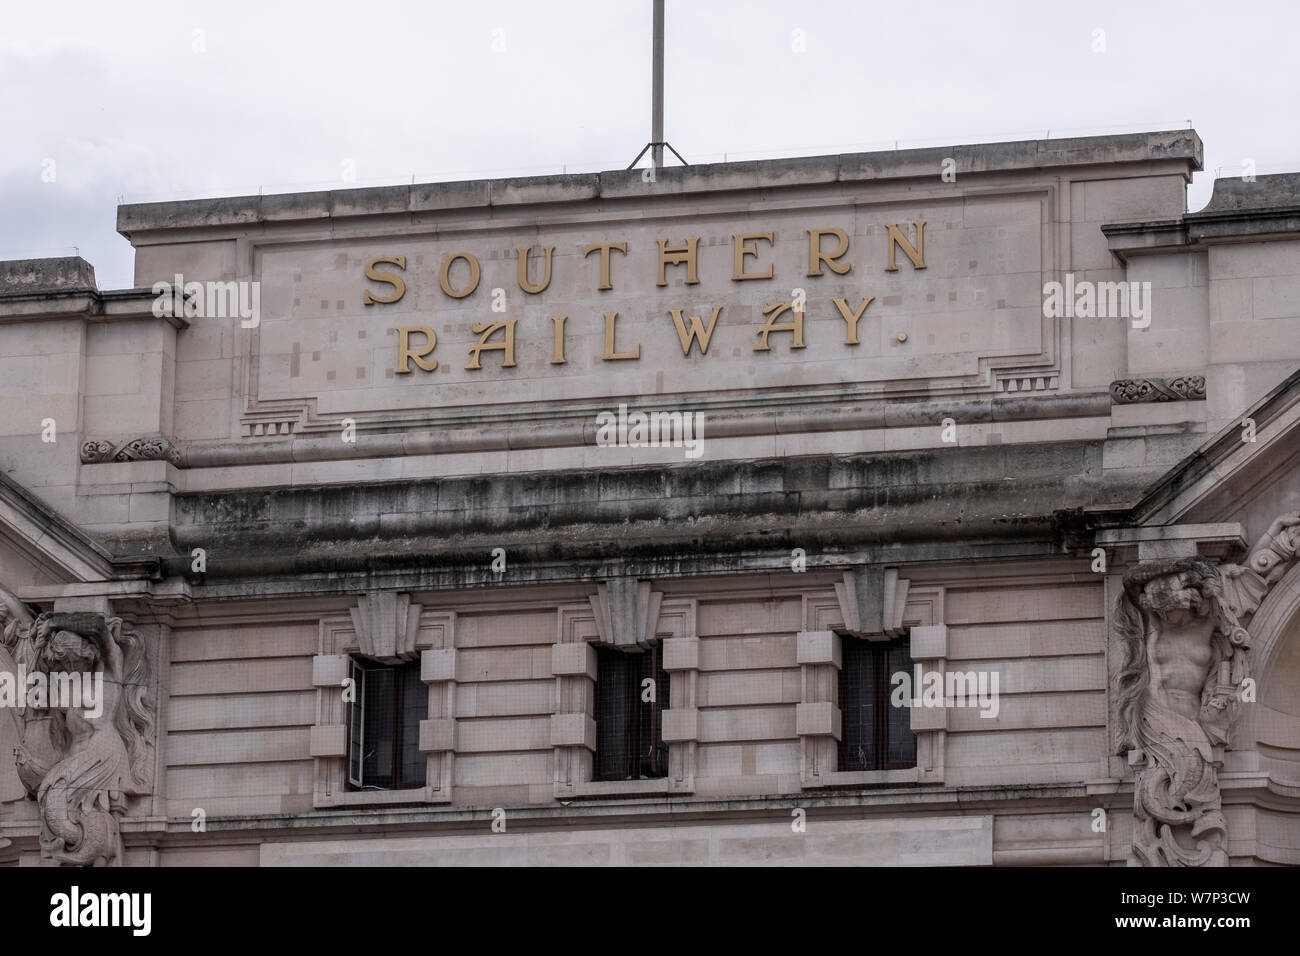 Fassade der Victoria Station in London die ursprüngliche Southern Railway Company Name, die noch an der Station schmückt. Stockfoto